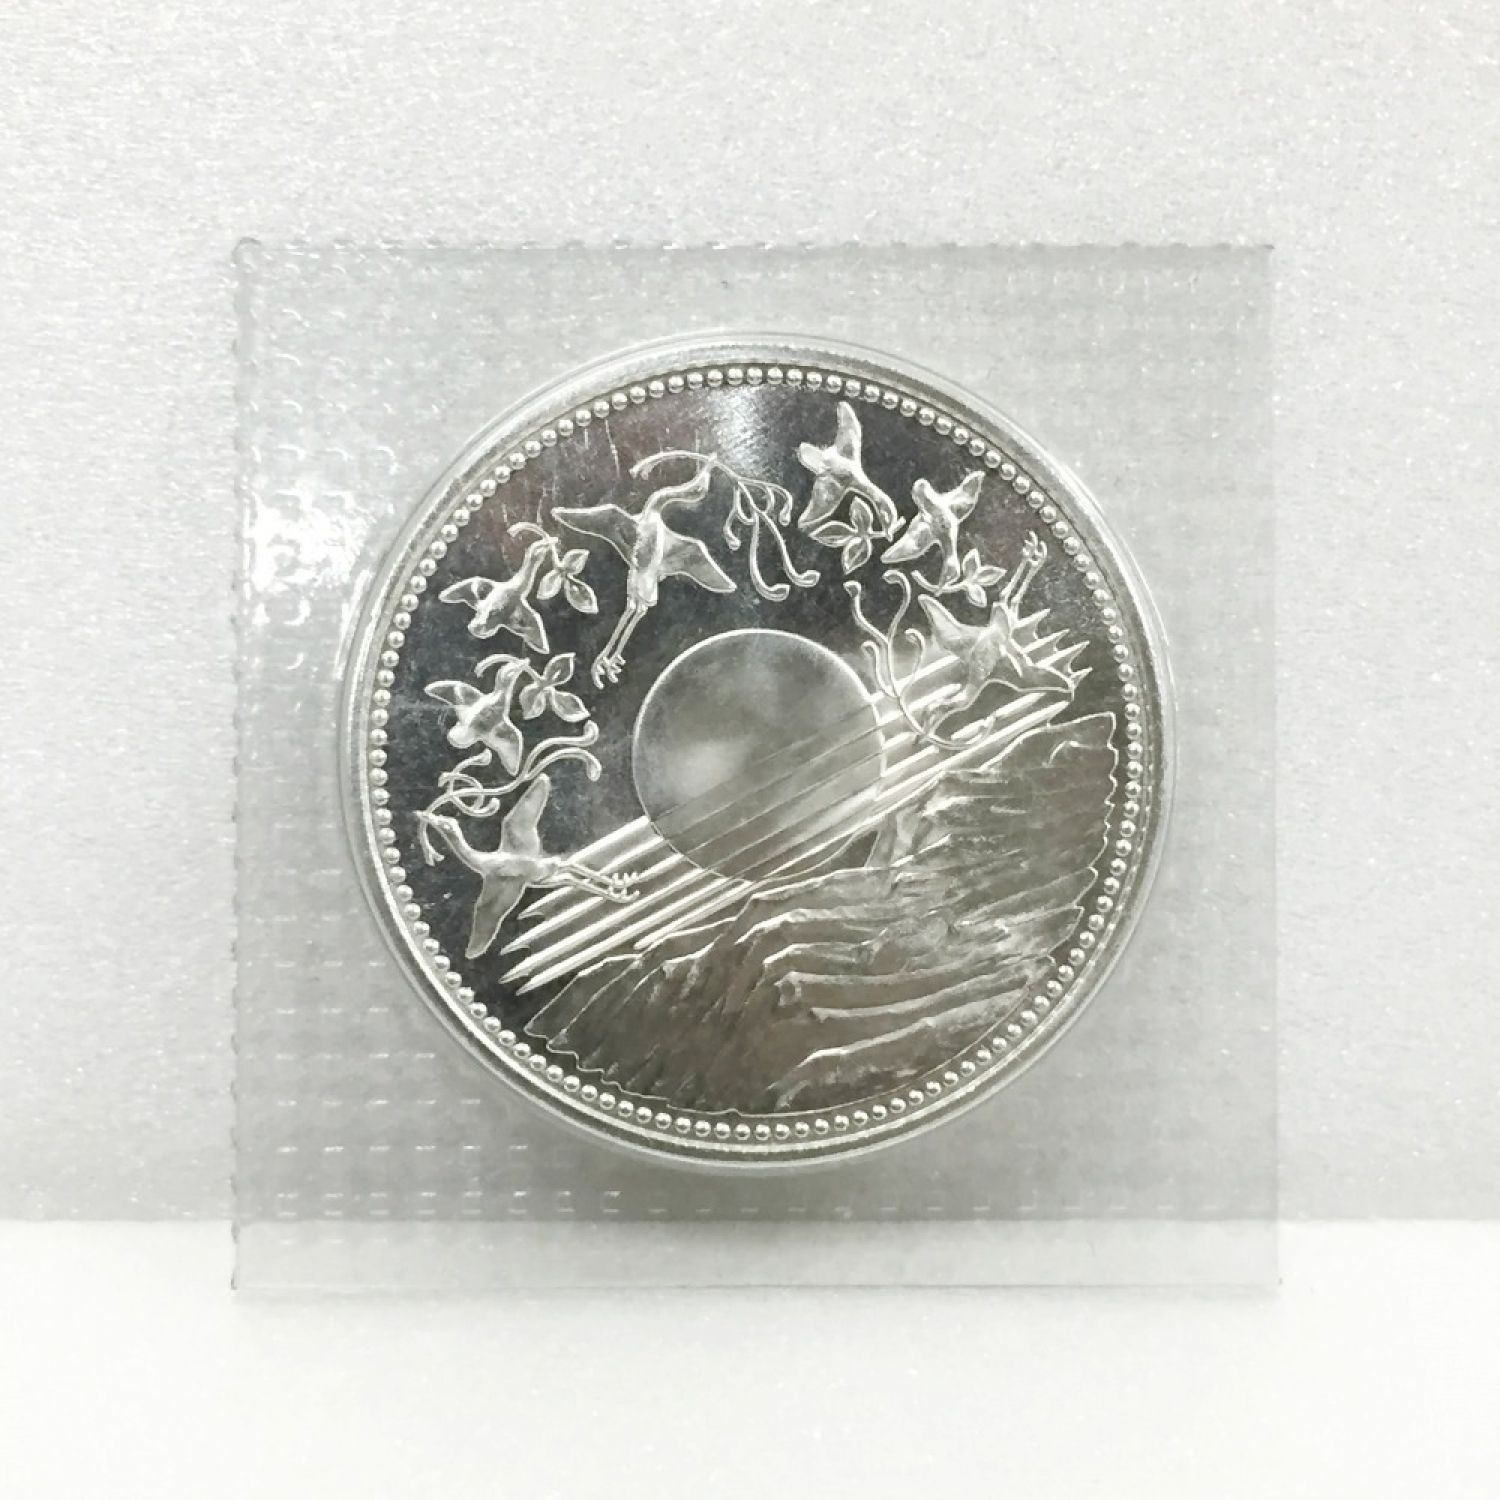 天皇陛下御在位60年記念１万円銀貨・ブリスターパック入り2枚 セットエンタメ/ホビー